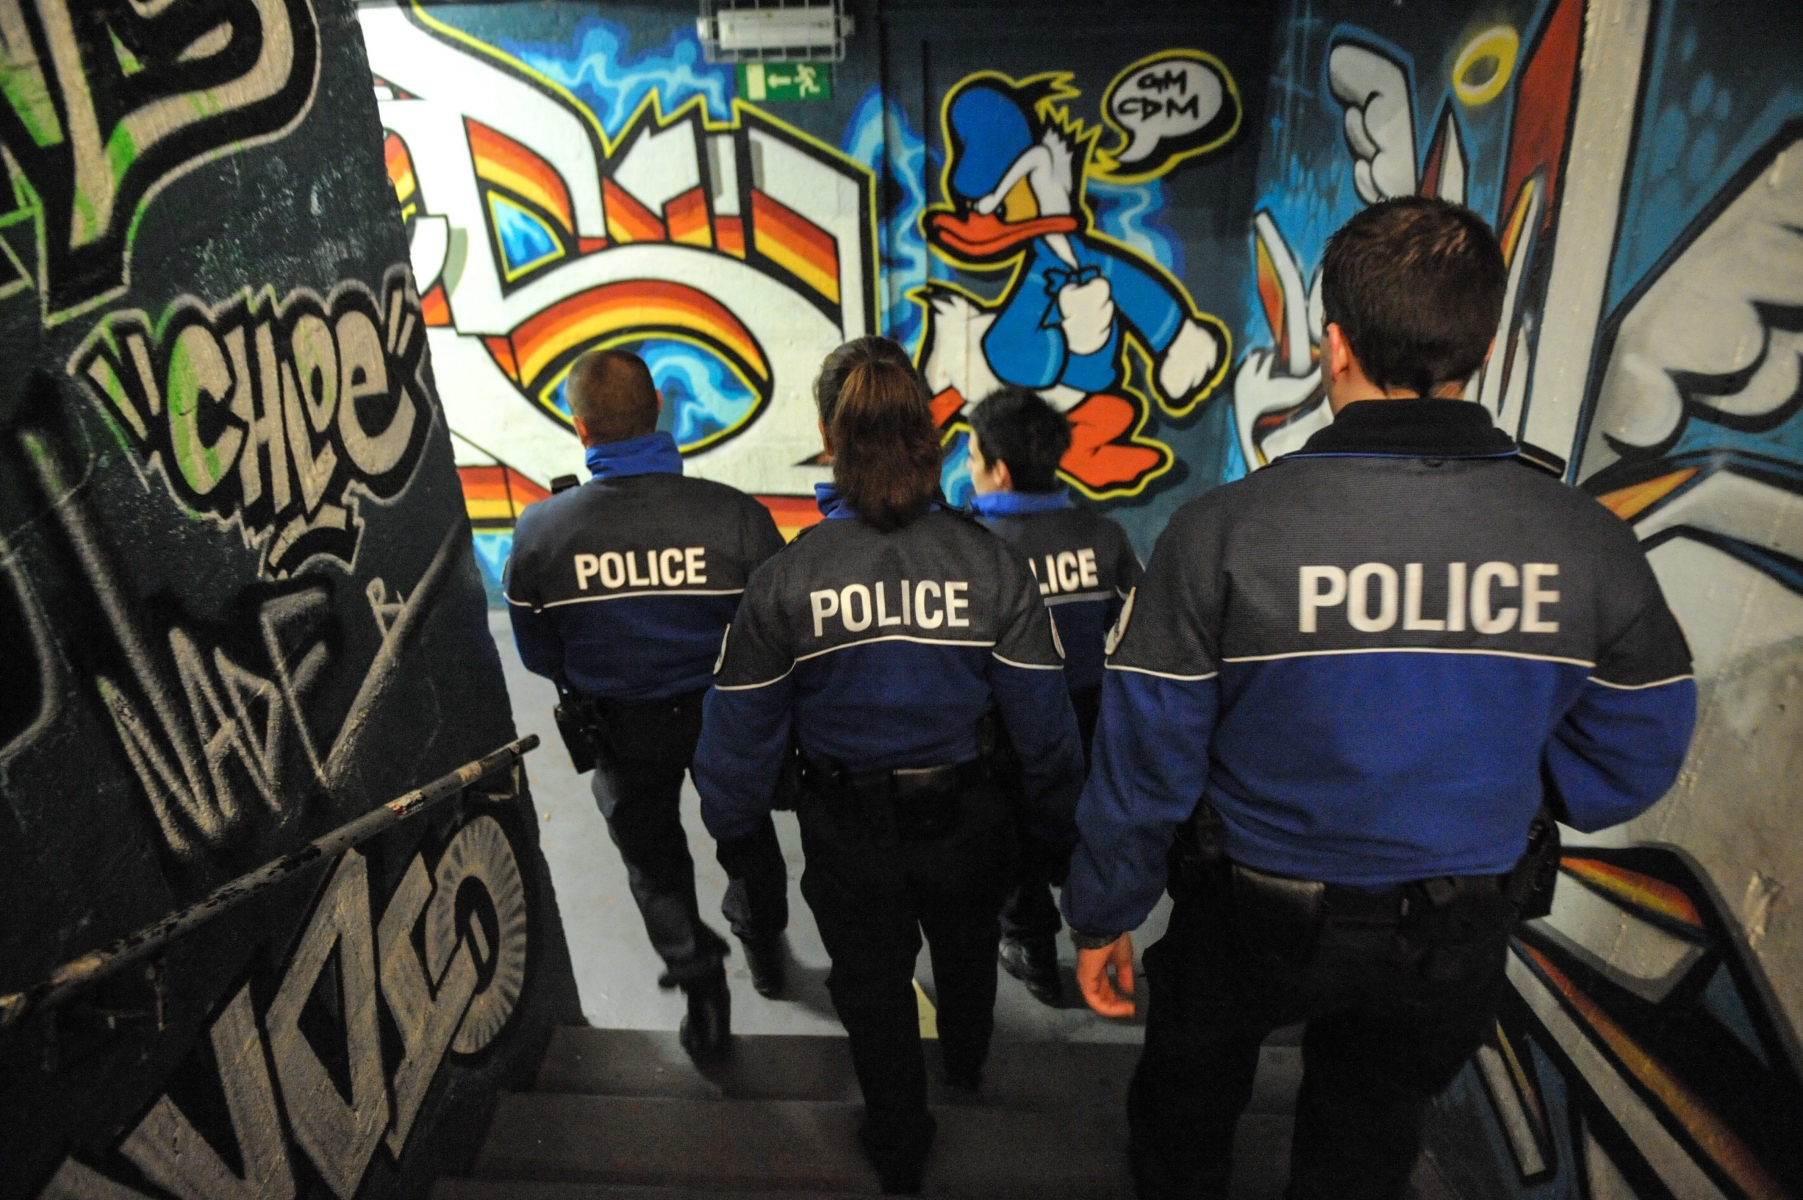 Ronde nocturne de la police de proximite dans la nuit: ici a la case a chocs



NEUCHATEL

25.01.2013

PHOTO: CHRISTIAN GALLEY POLICE DE PROXIMITE